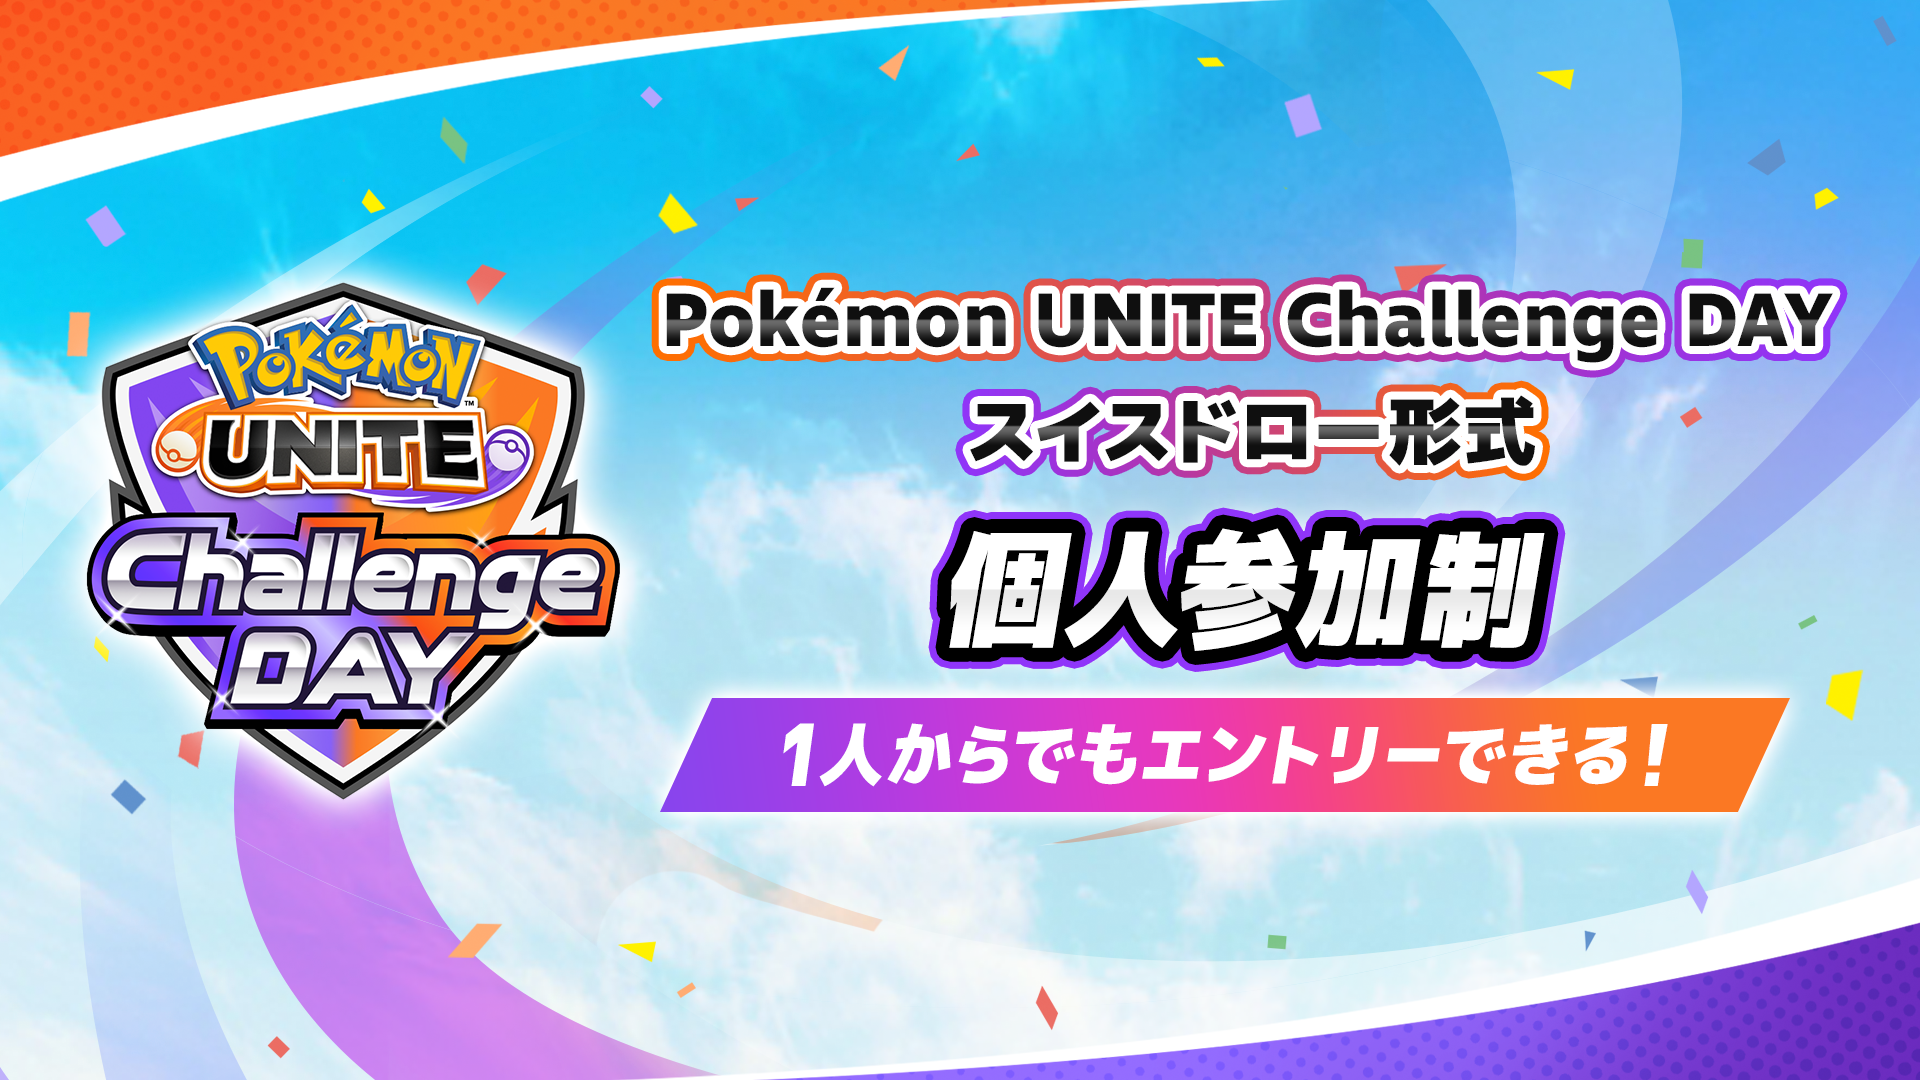 Pokemon UNITE Challenge DAY 06.17 個人参加制 スイスドロー形式 午前の部・午後の部 計3イベント開催！